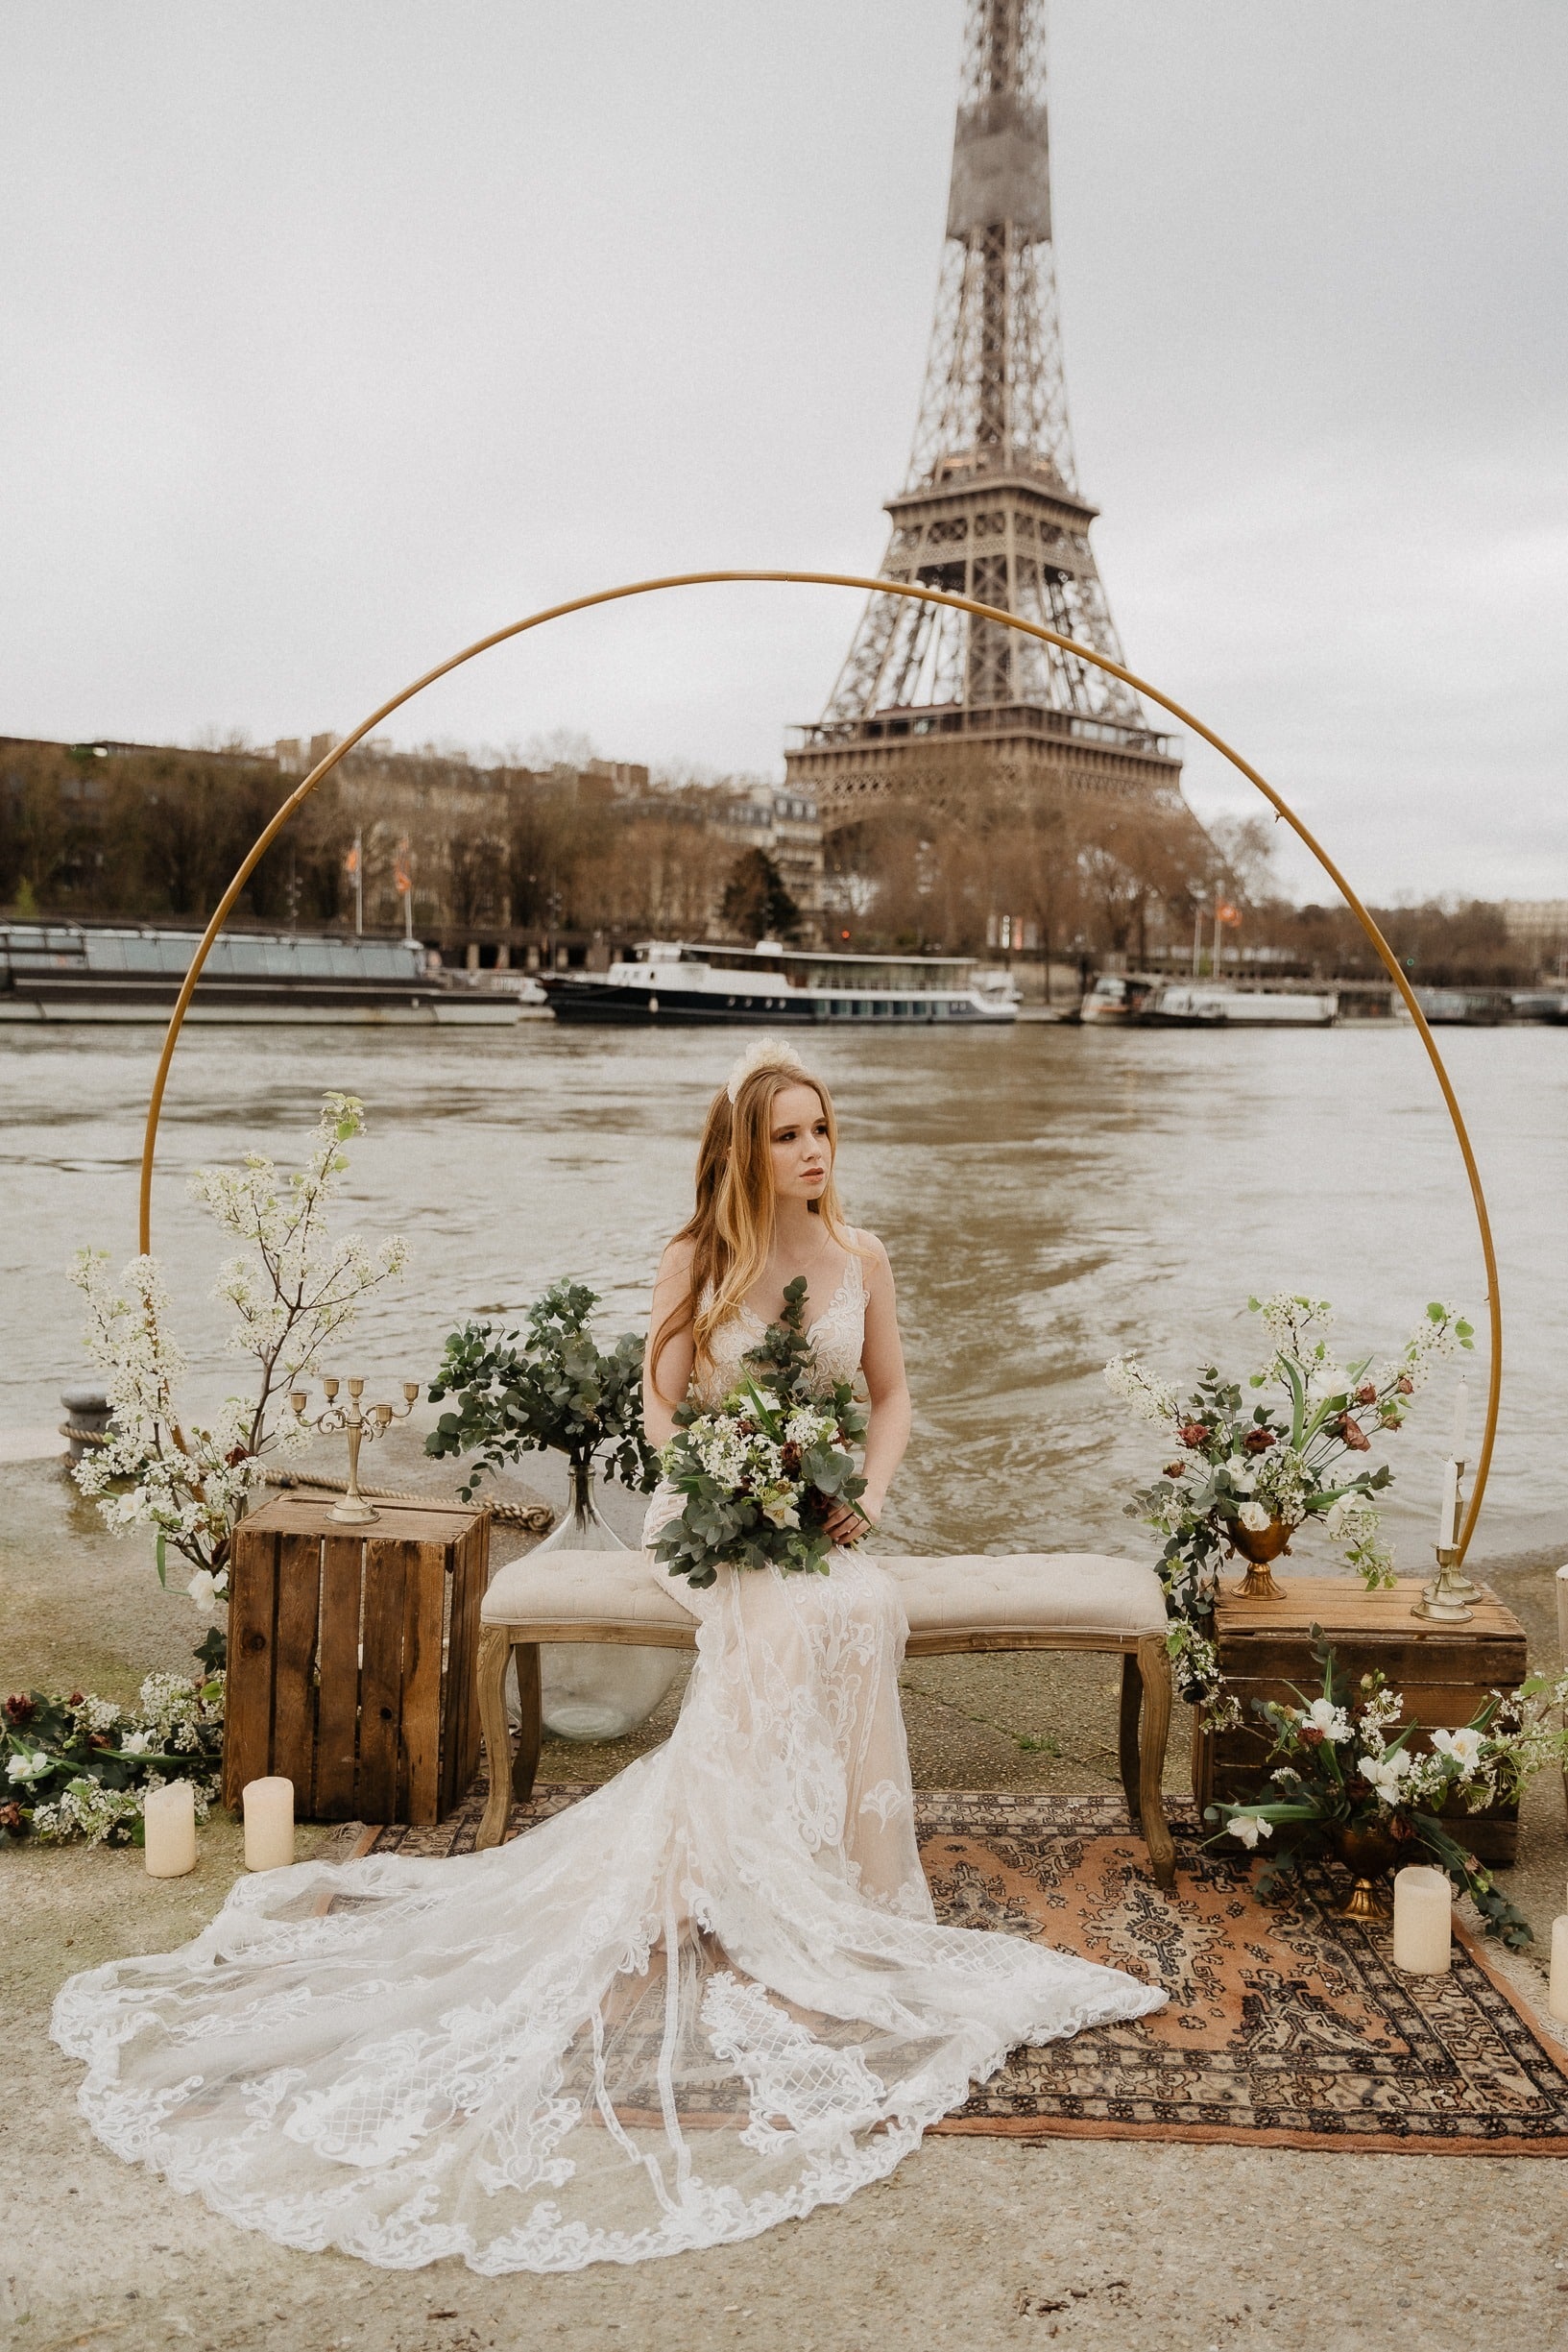 décoration de mariage arche ronde pour decor photo